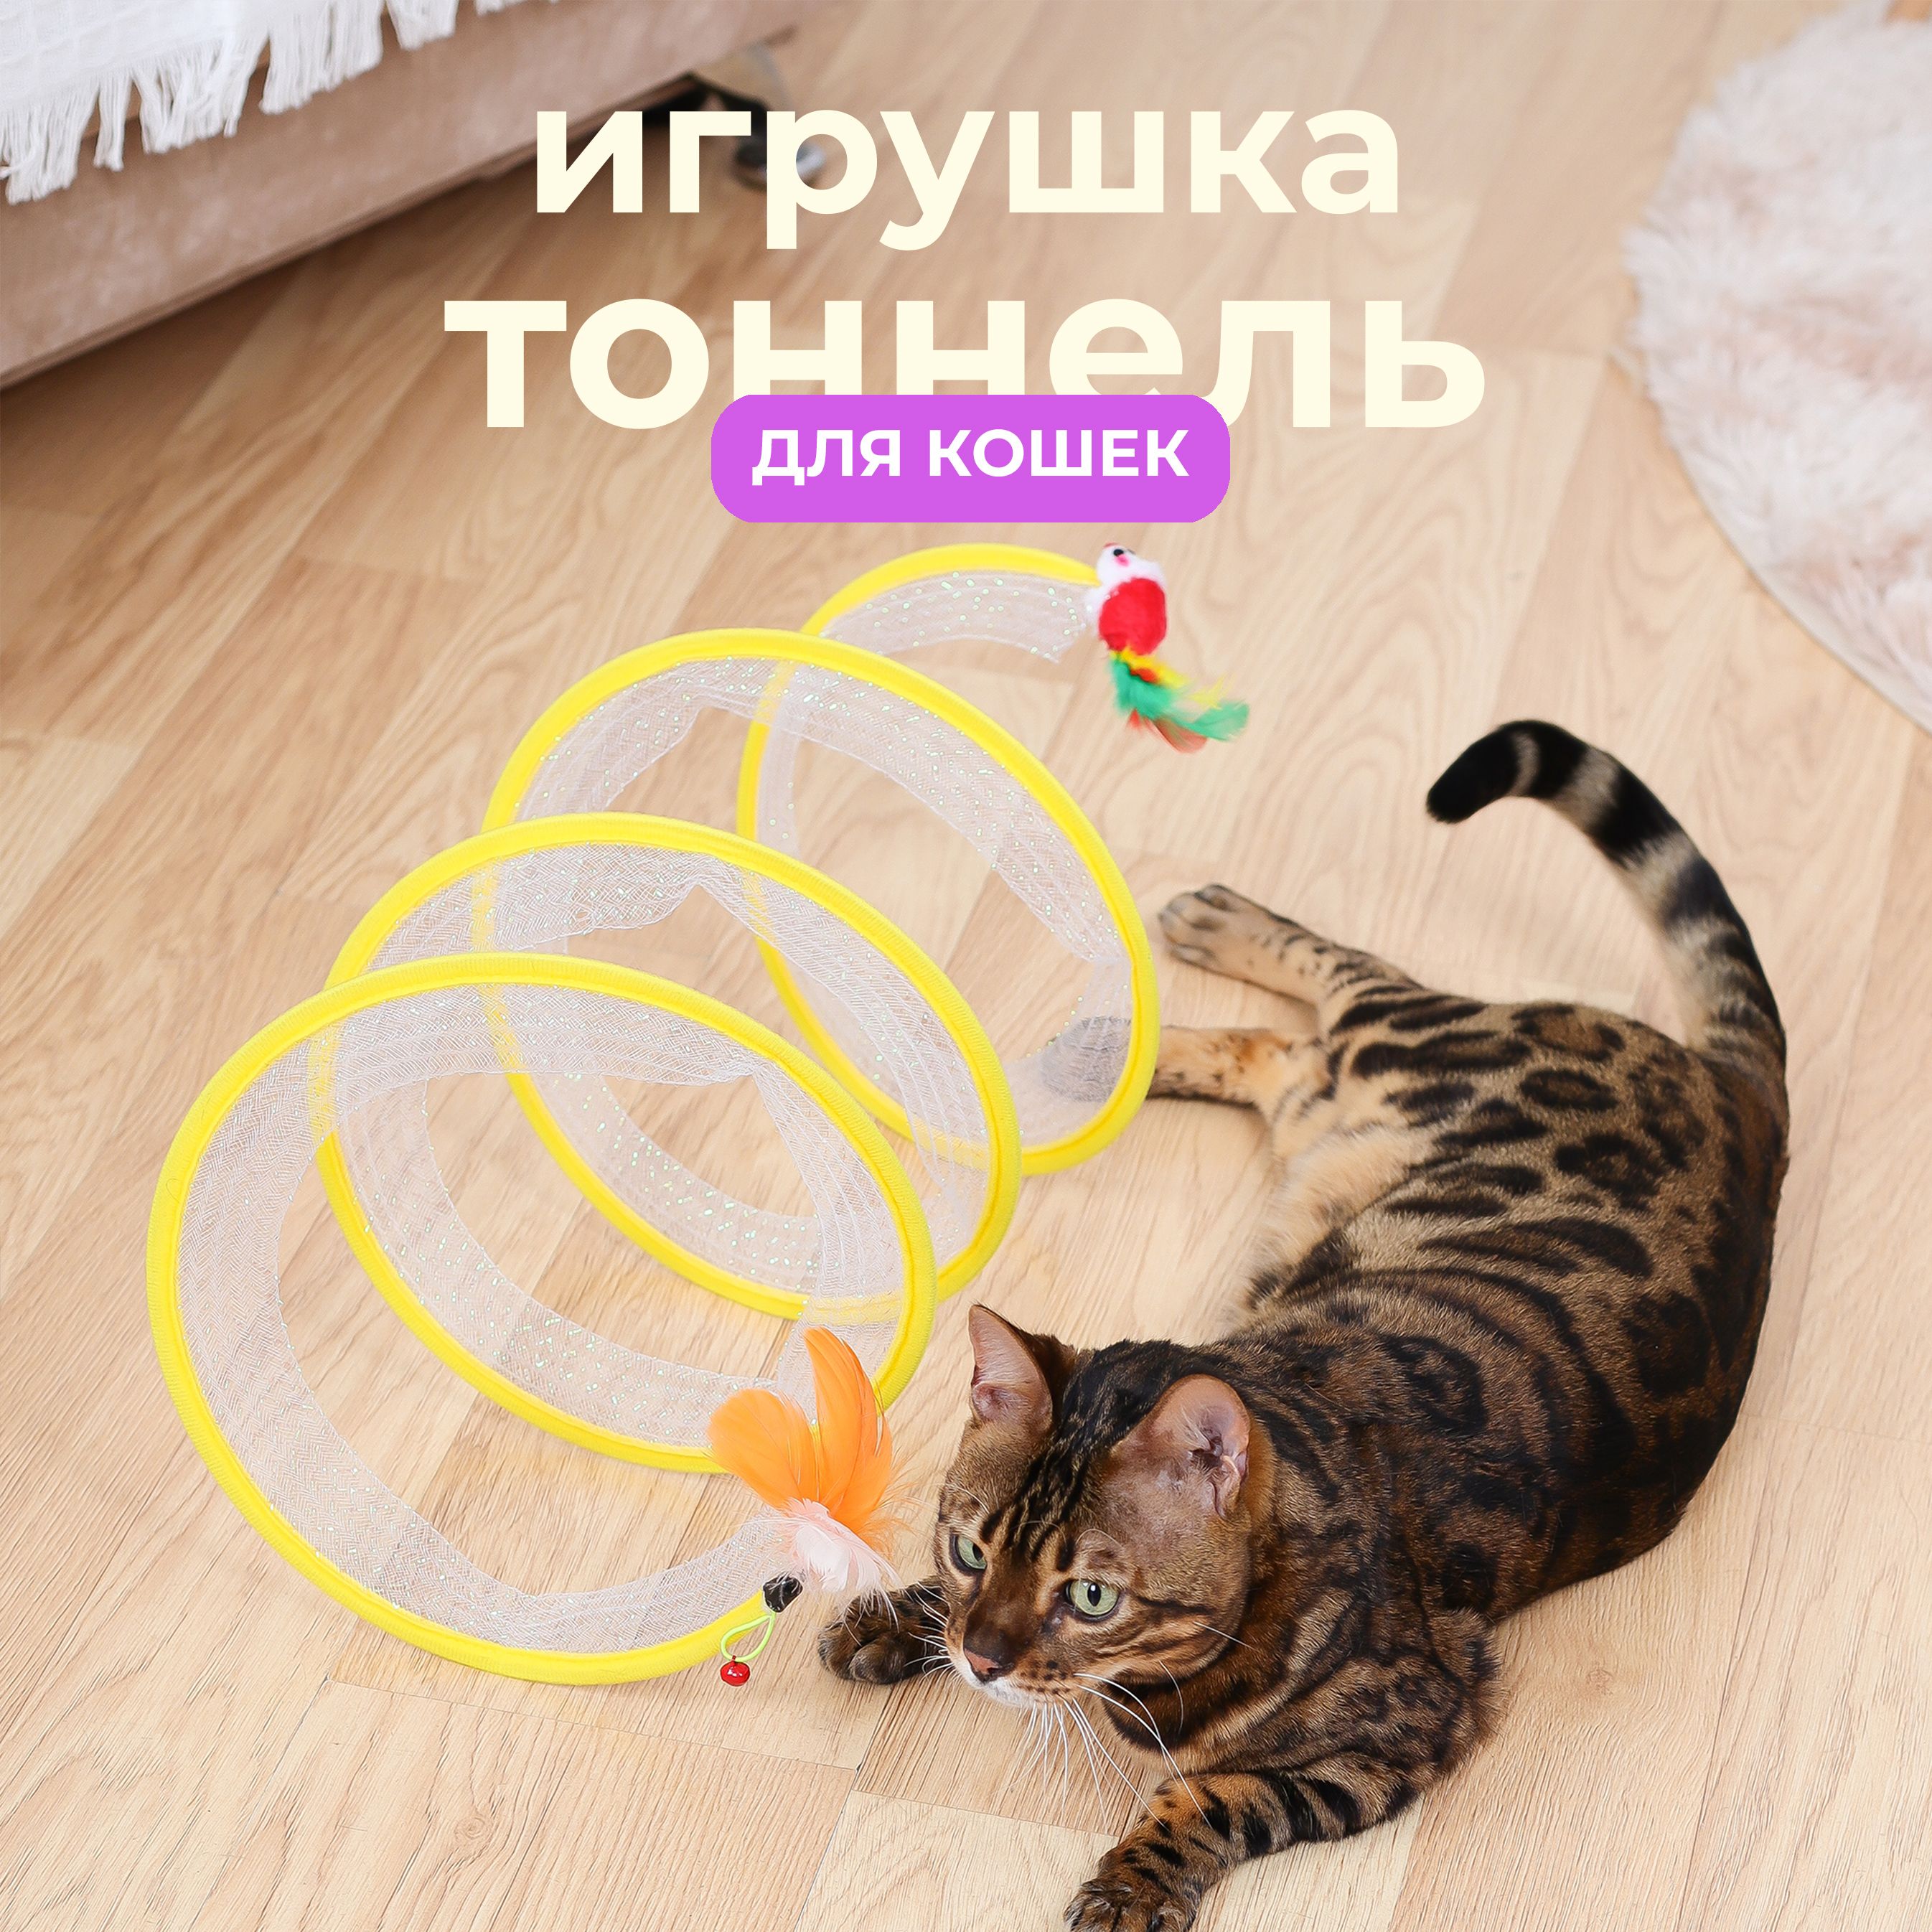 Тоннель для кошки своими руками